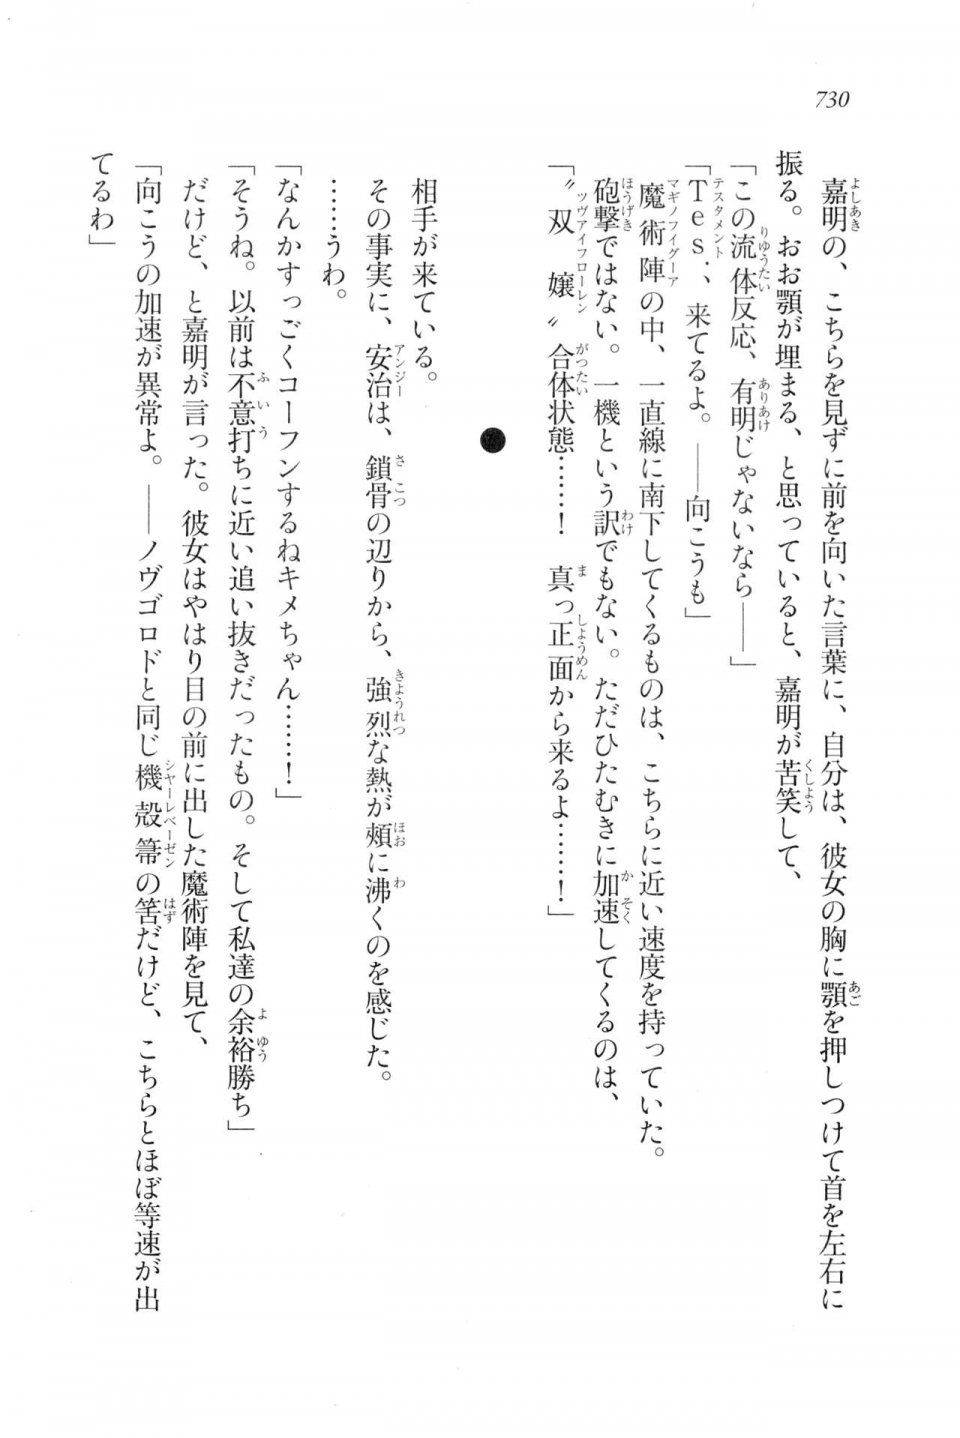 Kyoukai Senjou no Horizon LN Vol 20(8B) - Photo #730